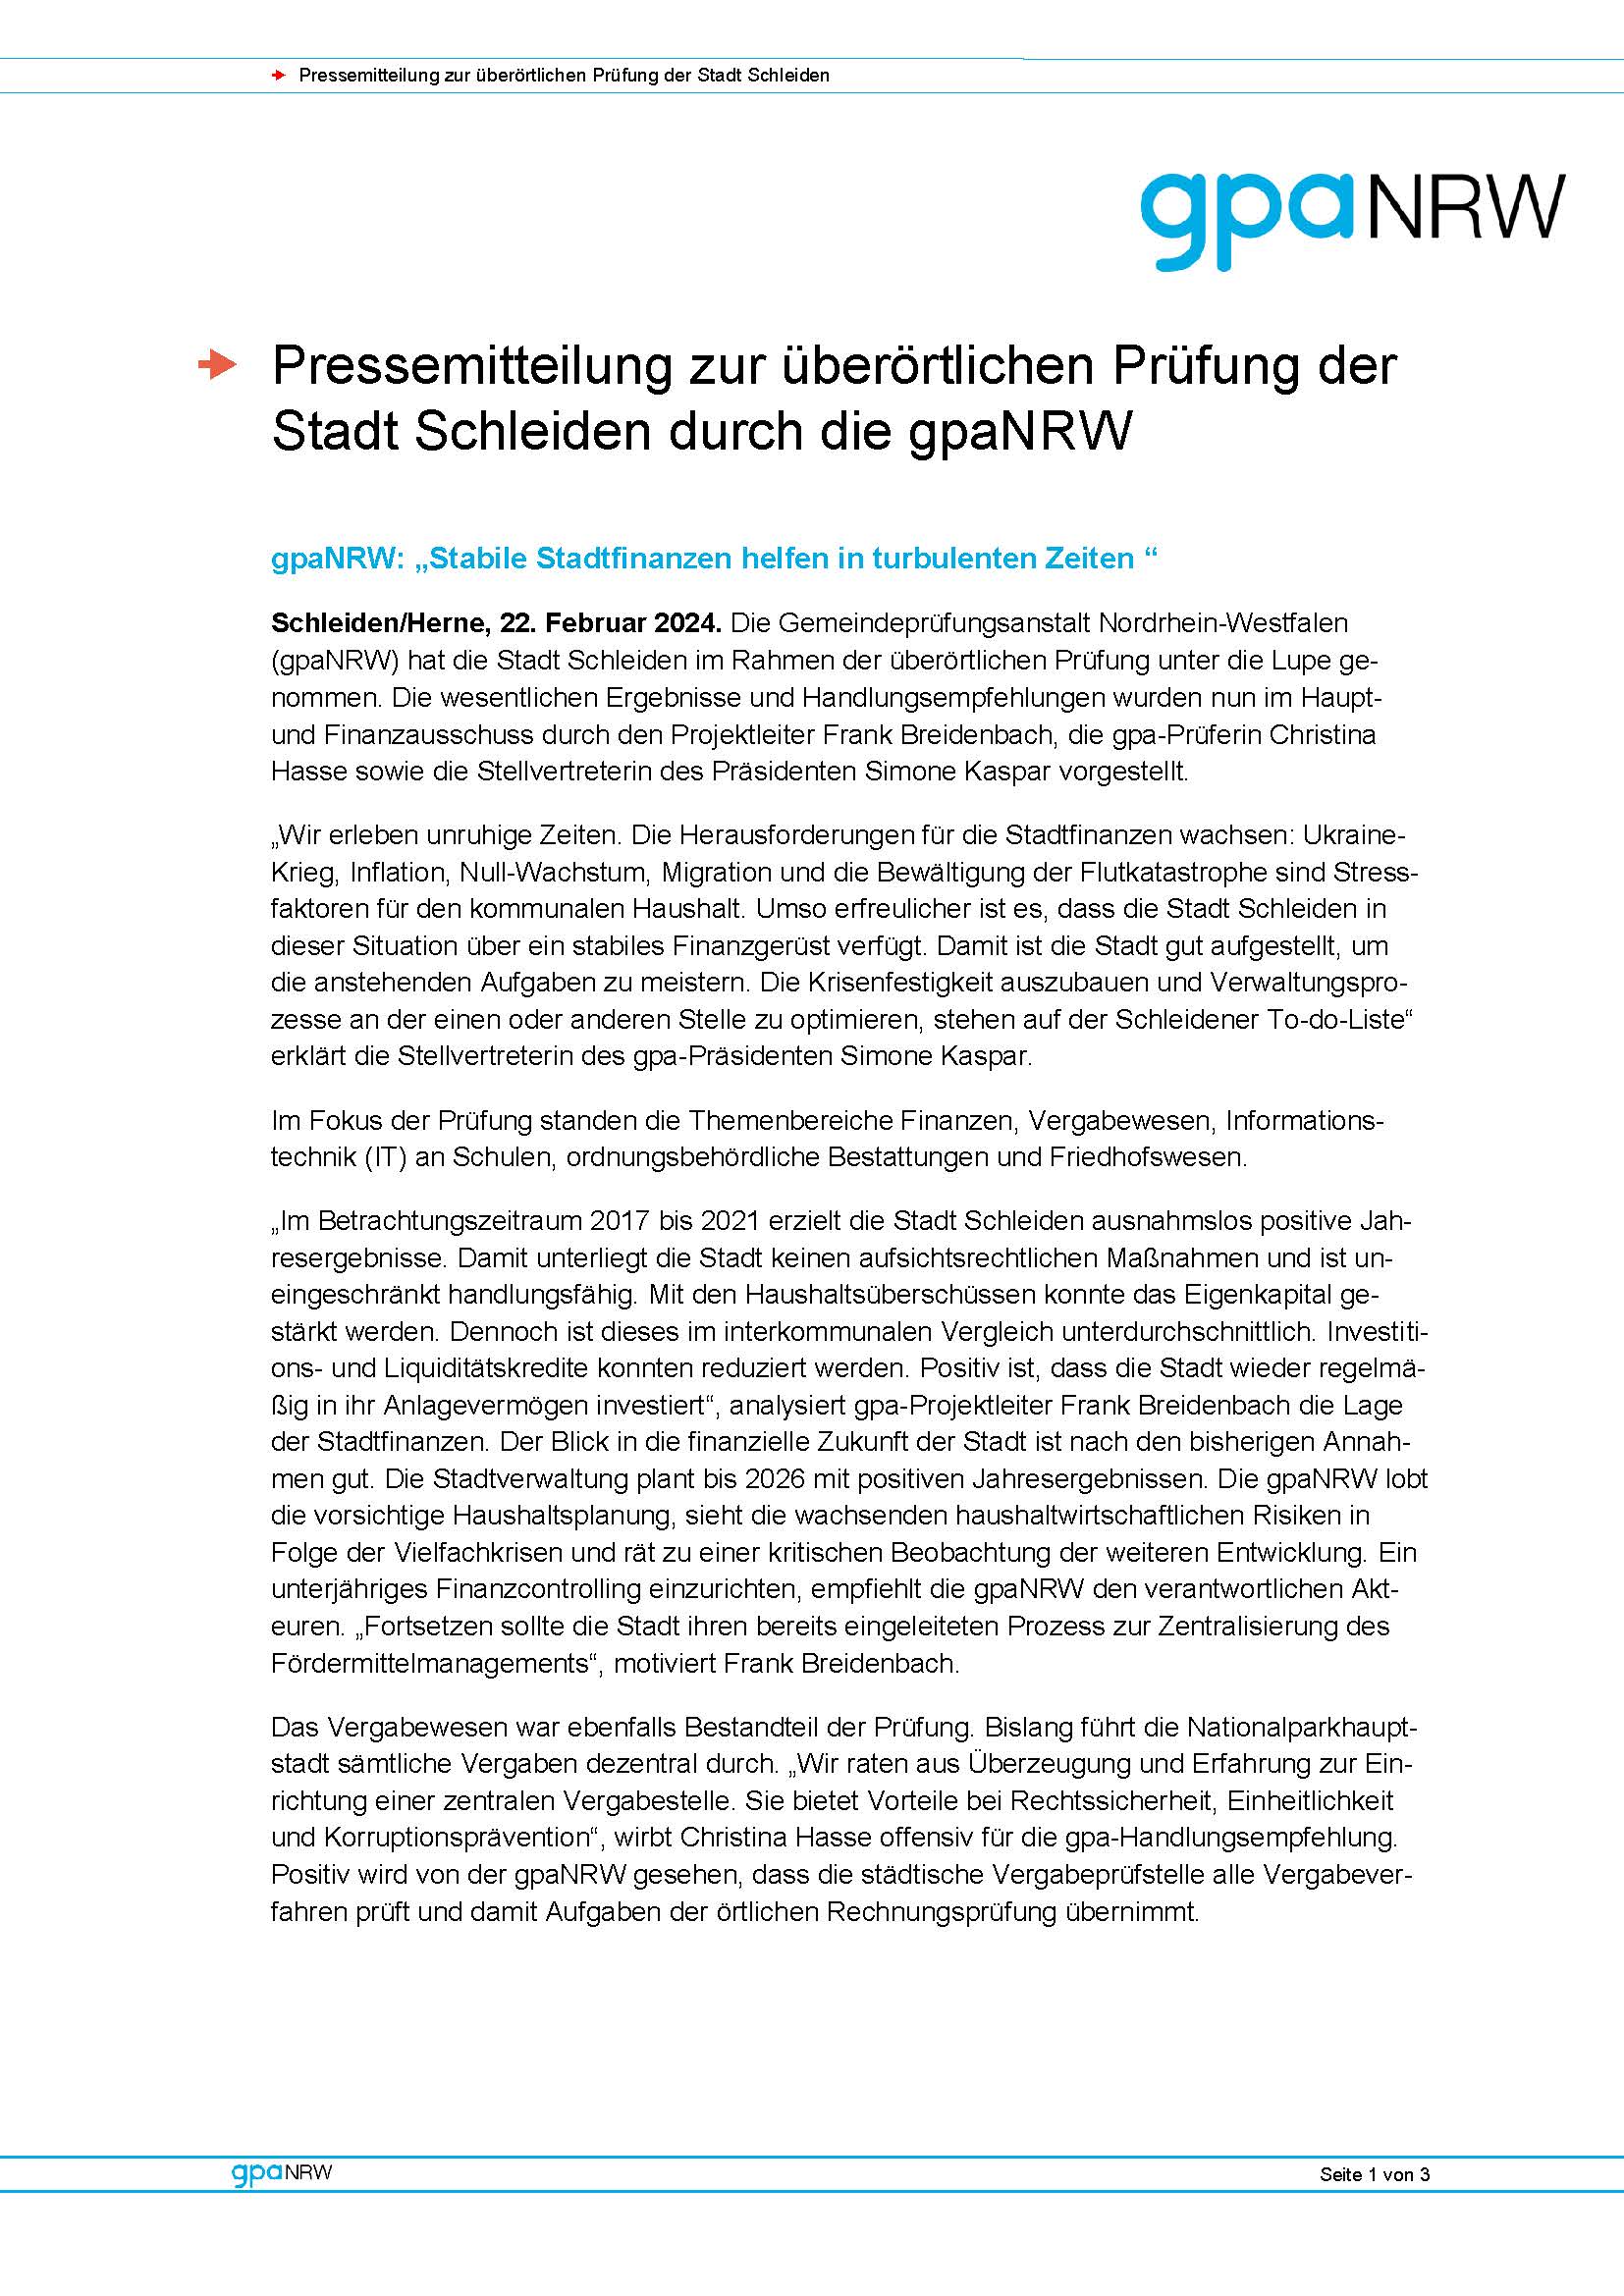 Pressemitteilung zur überörtlichen Prüfung der Stadt Schleiden durch die gpaNRW